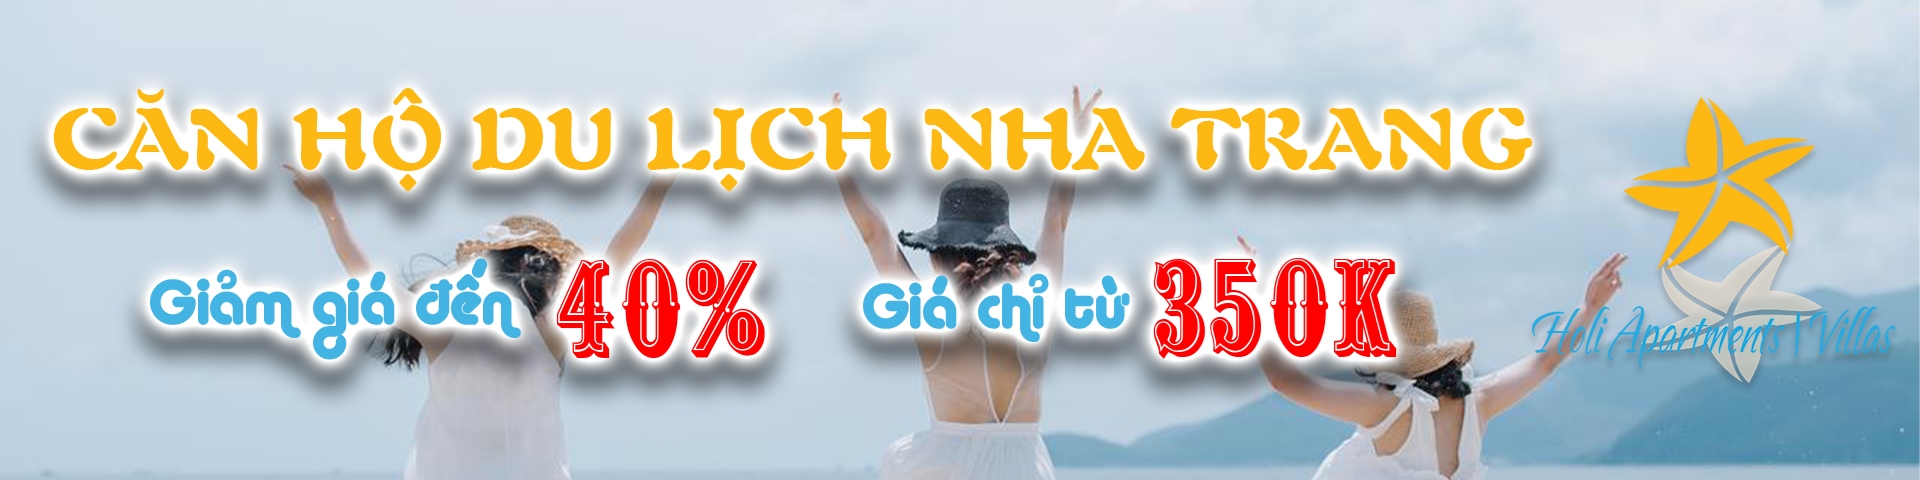 Holi Panorama Nha Trang giảm giá đến 50%